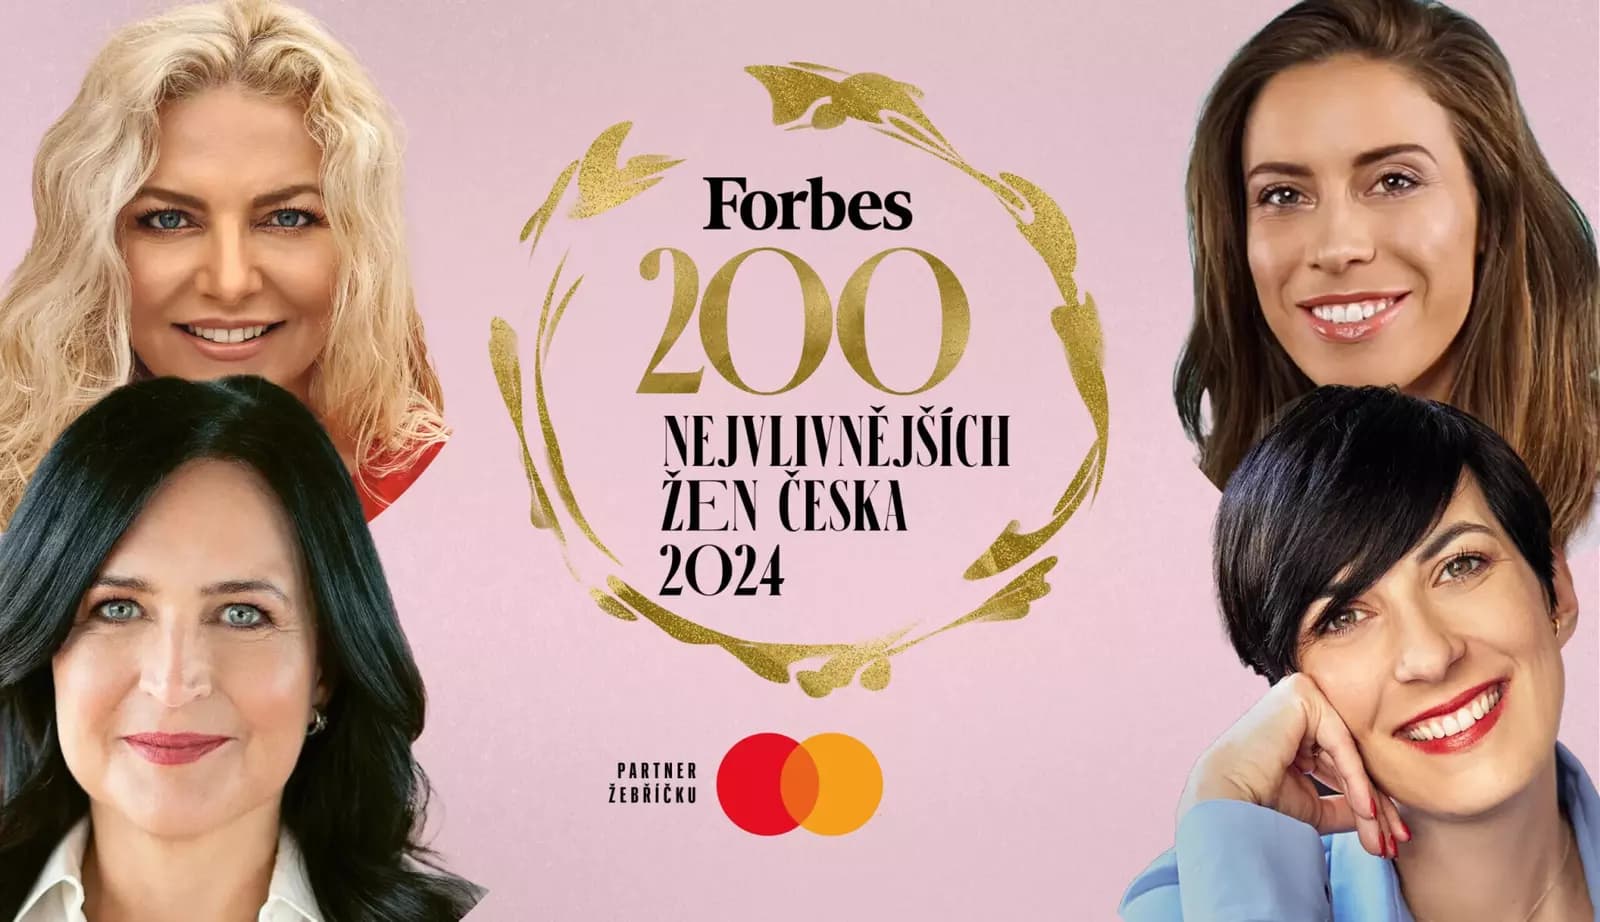 Forbes: рейтинг самых влиятельных женщин в Чехии в 2024 году